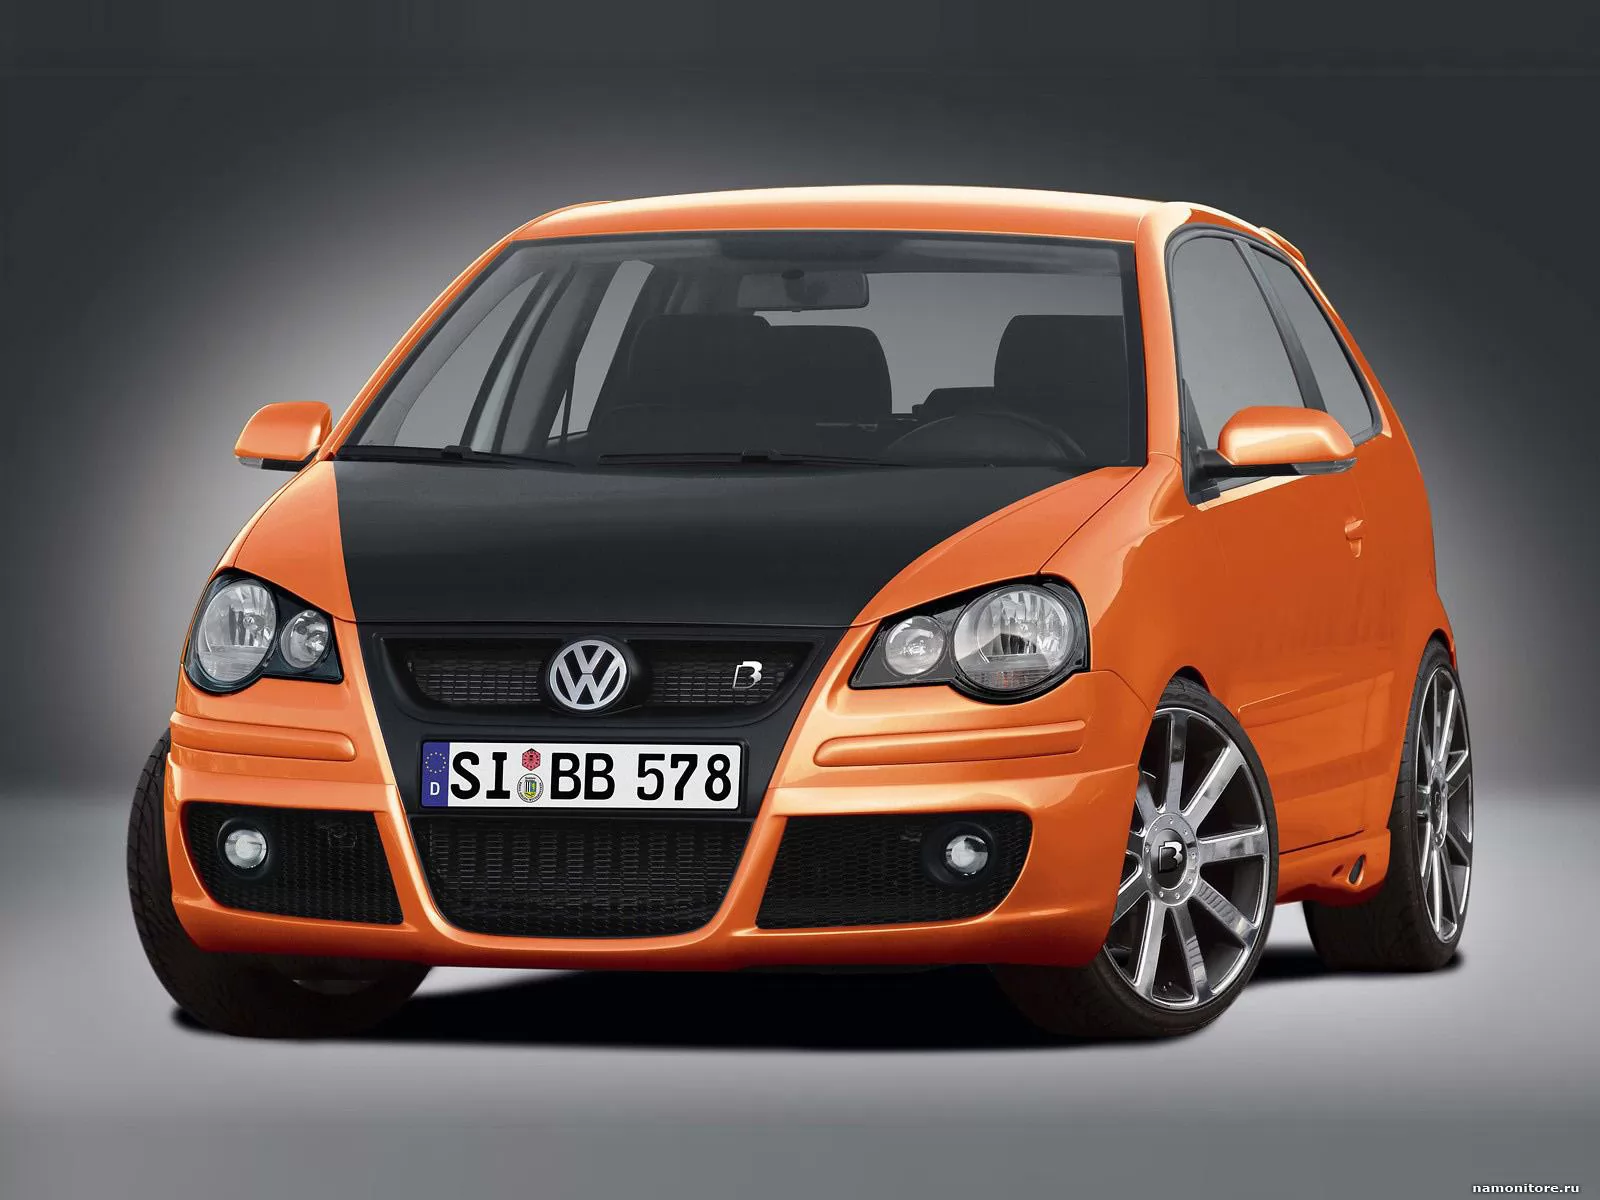 Volkswagen, Volkswagen, автомобили, оранжевое, техника х